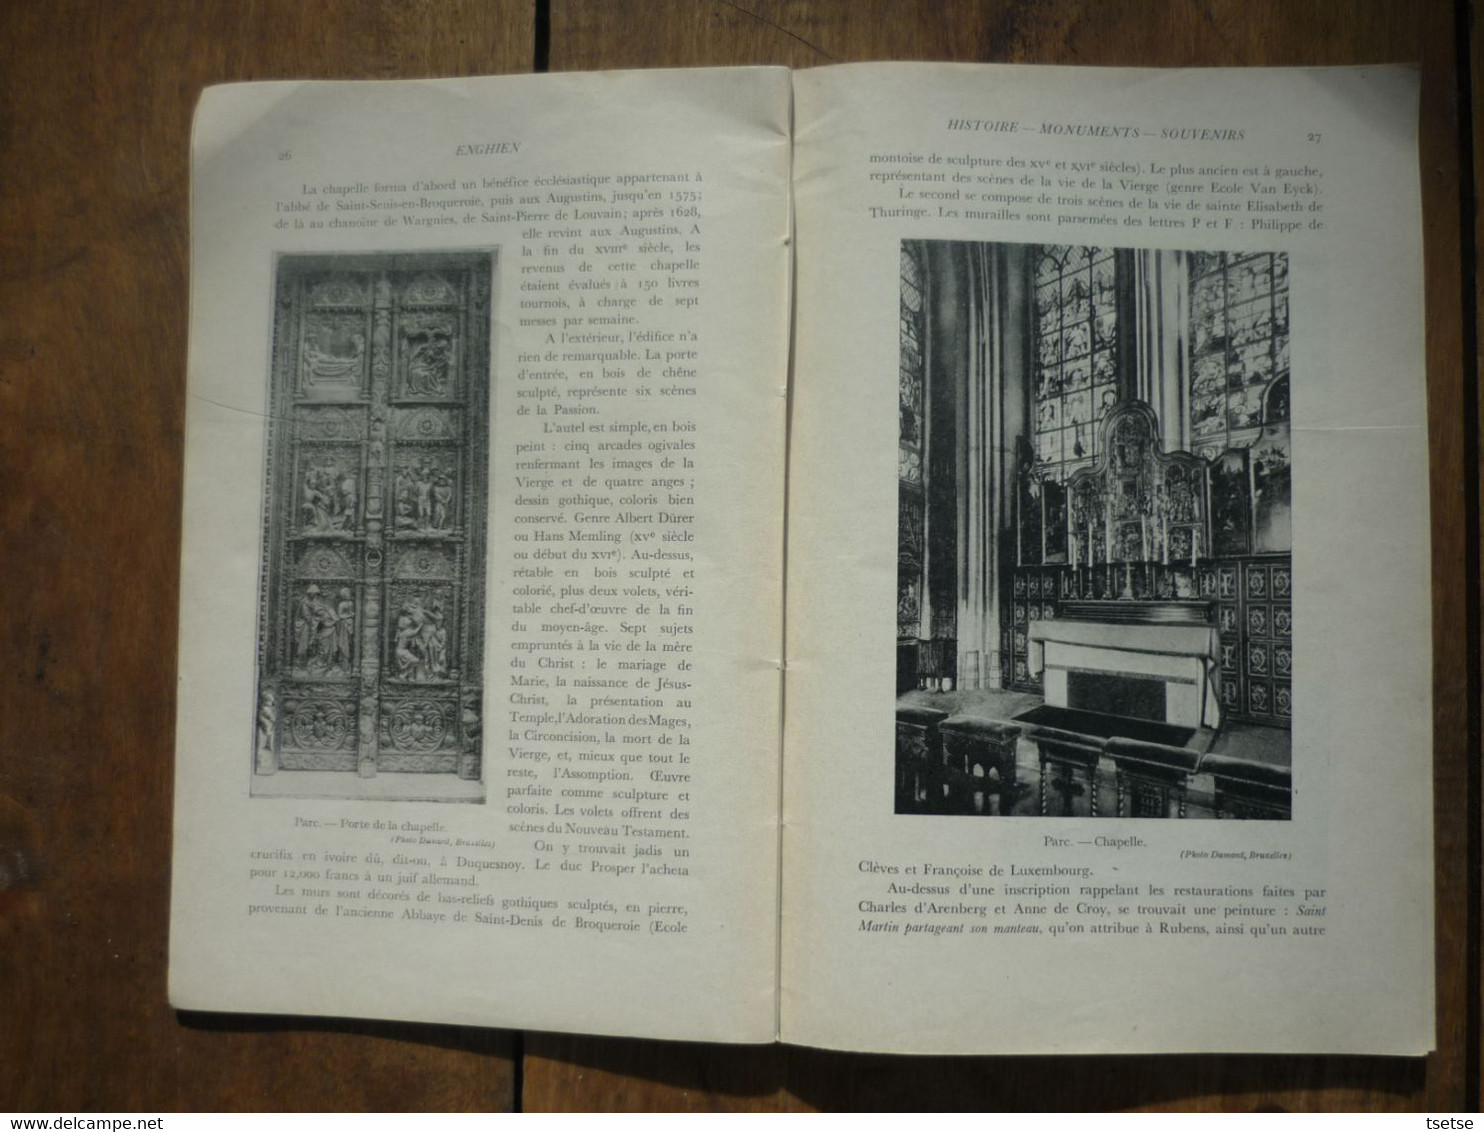 Enghien - Livre Historique écrit Par Julienne M. Moulinasse  ... Histoire-Monuments -Souvenirs -1931 - Enghien - Edingen